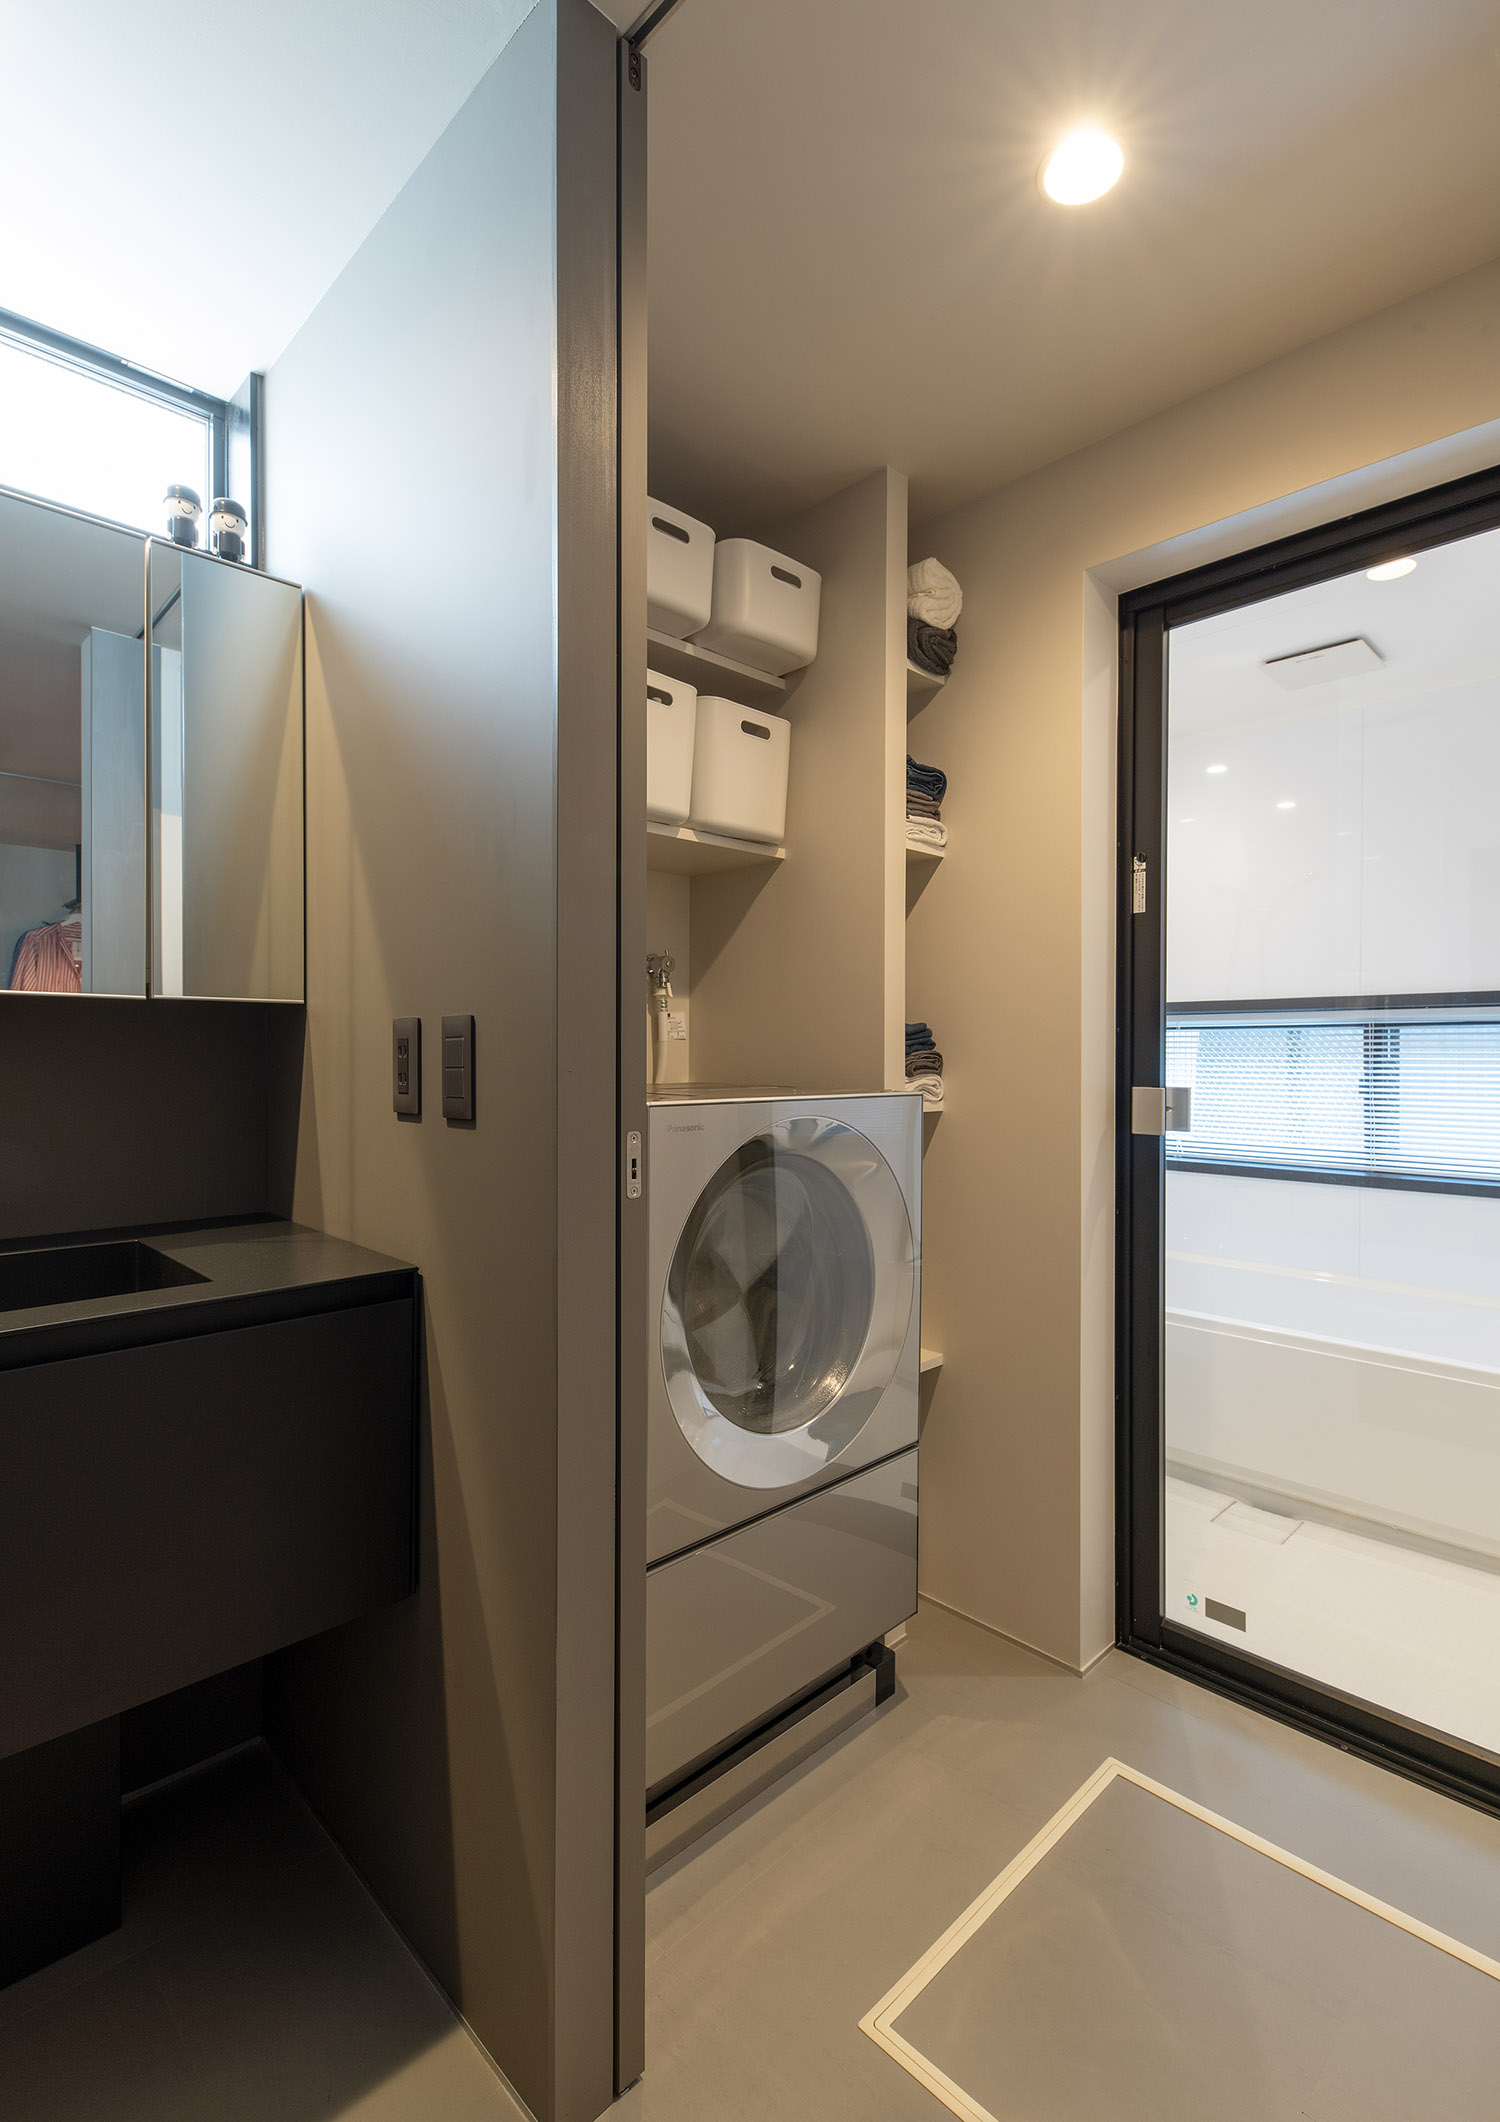 洗面所から脱衣所、ランドリールームへと繋がる空間・フリーダムアーキテクツの事例